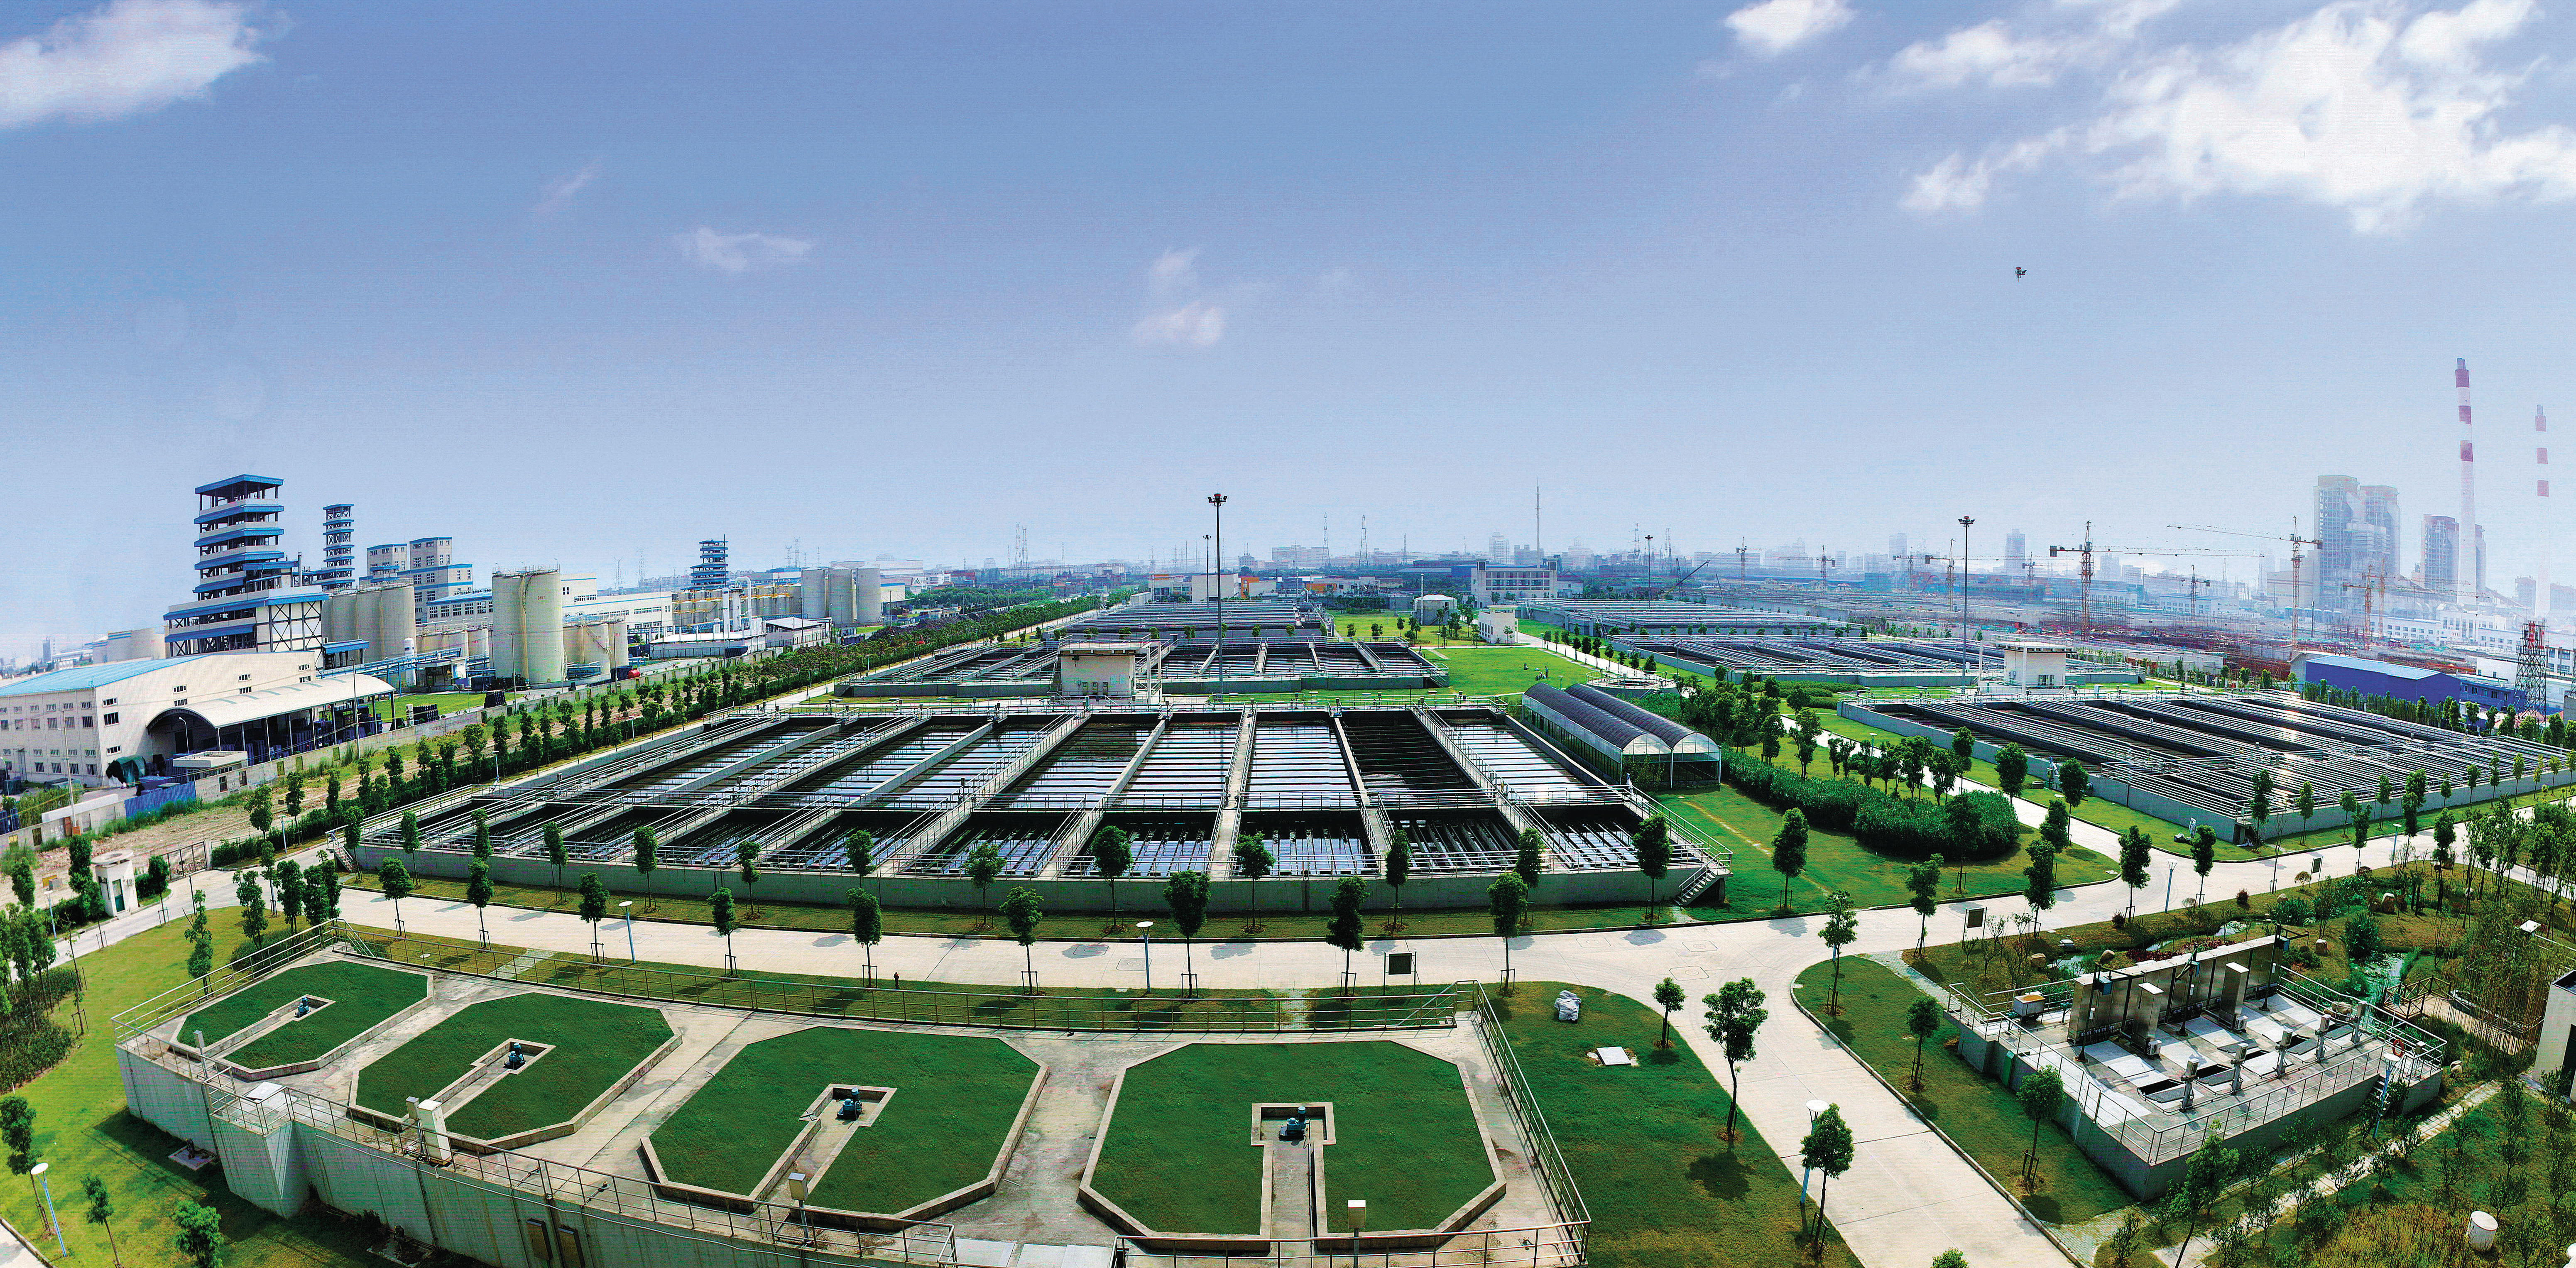 La plus grande usine de traitement des eaux usées en Asie : Usine de traitement des eaux usées de Bailonggang Shanghai